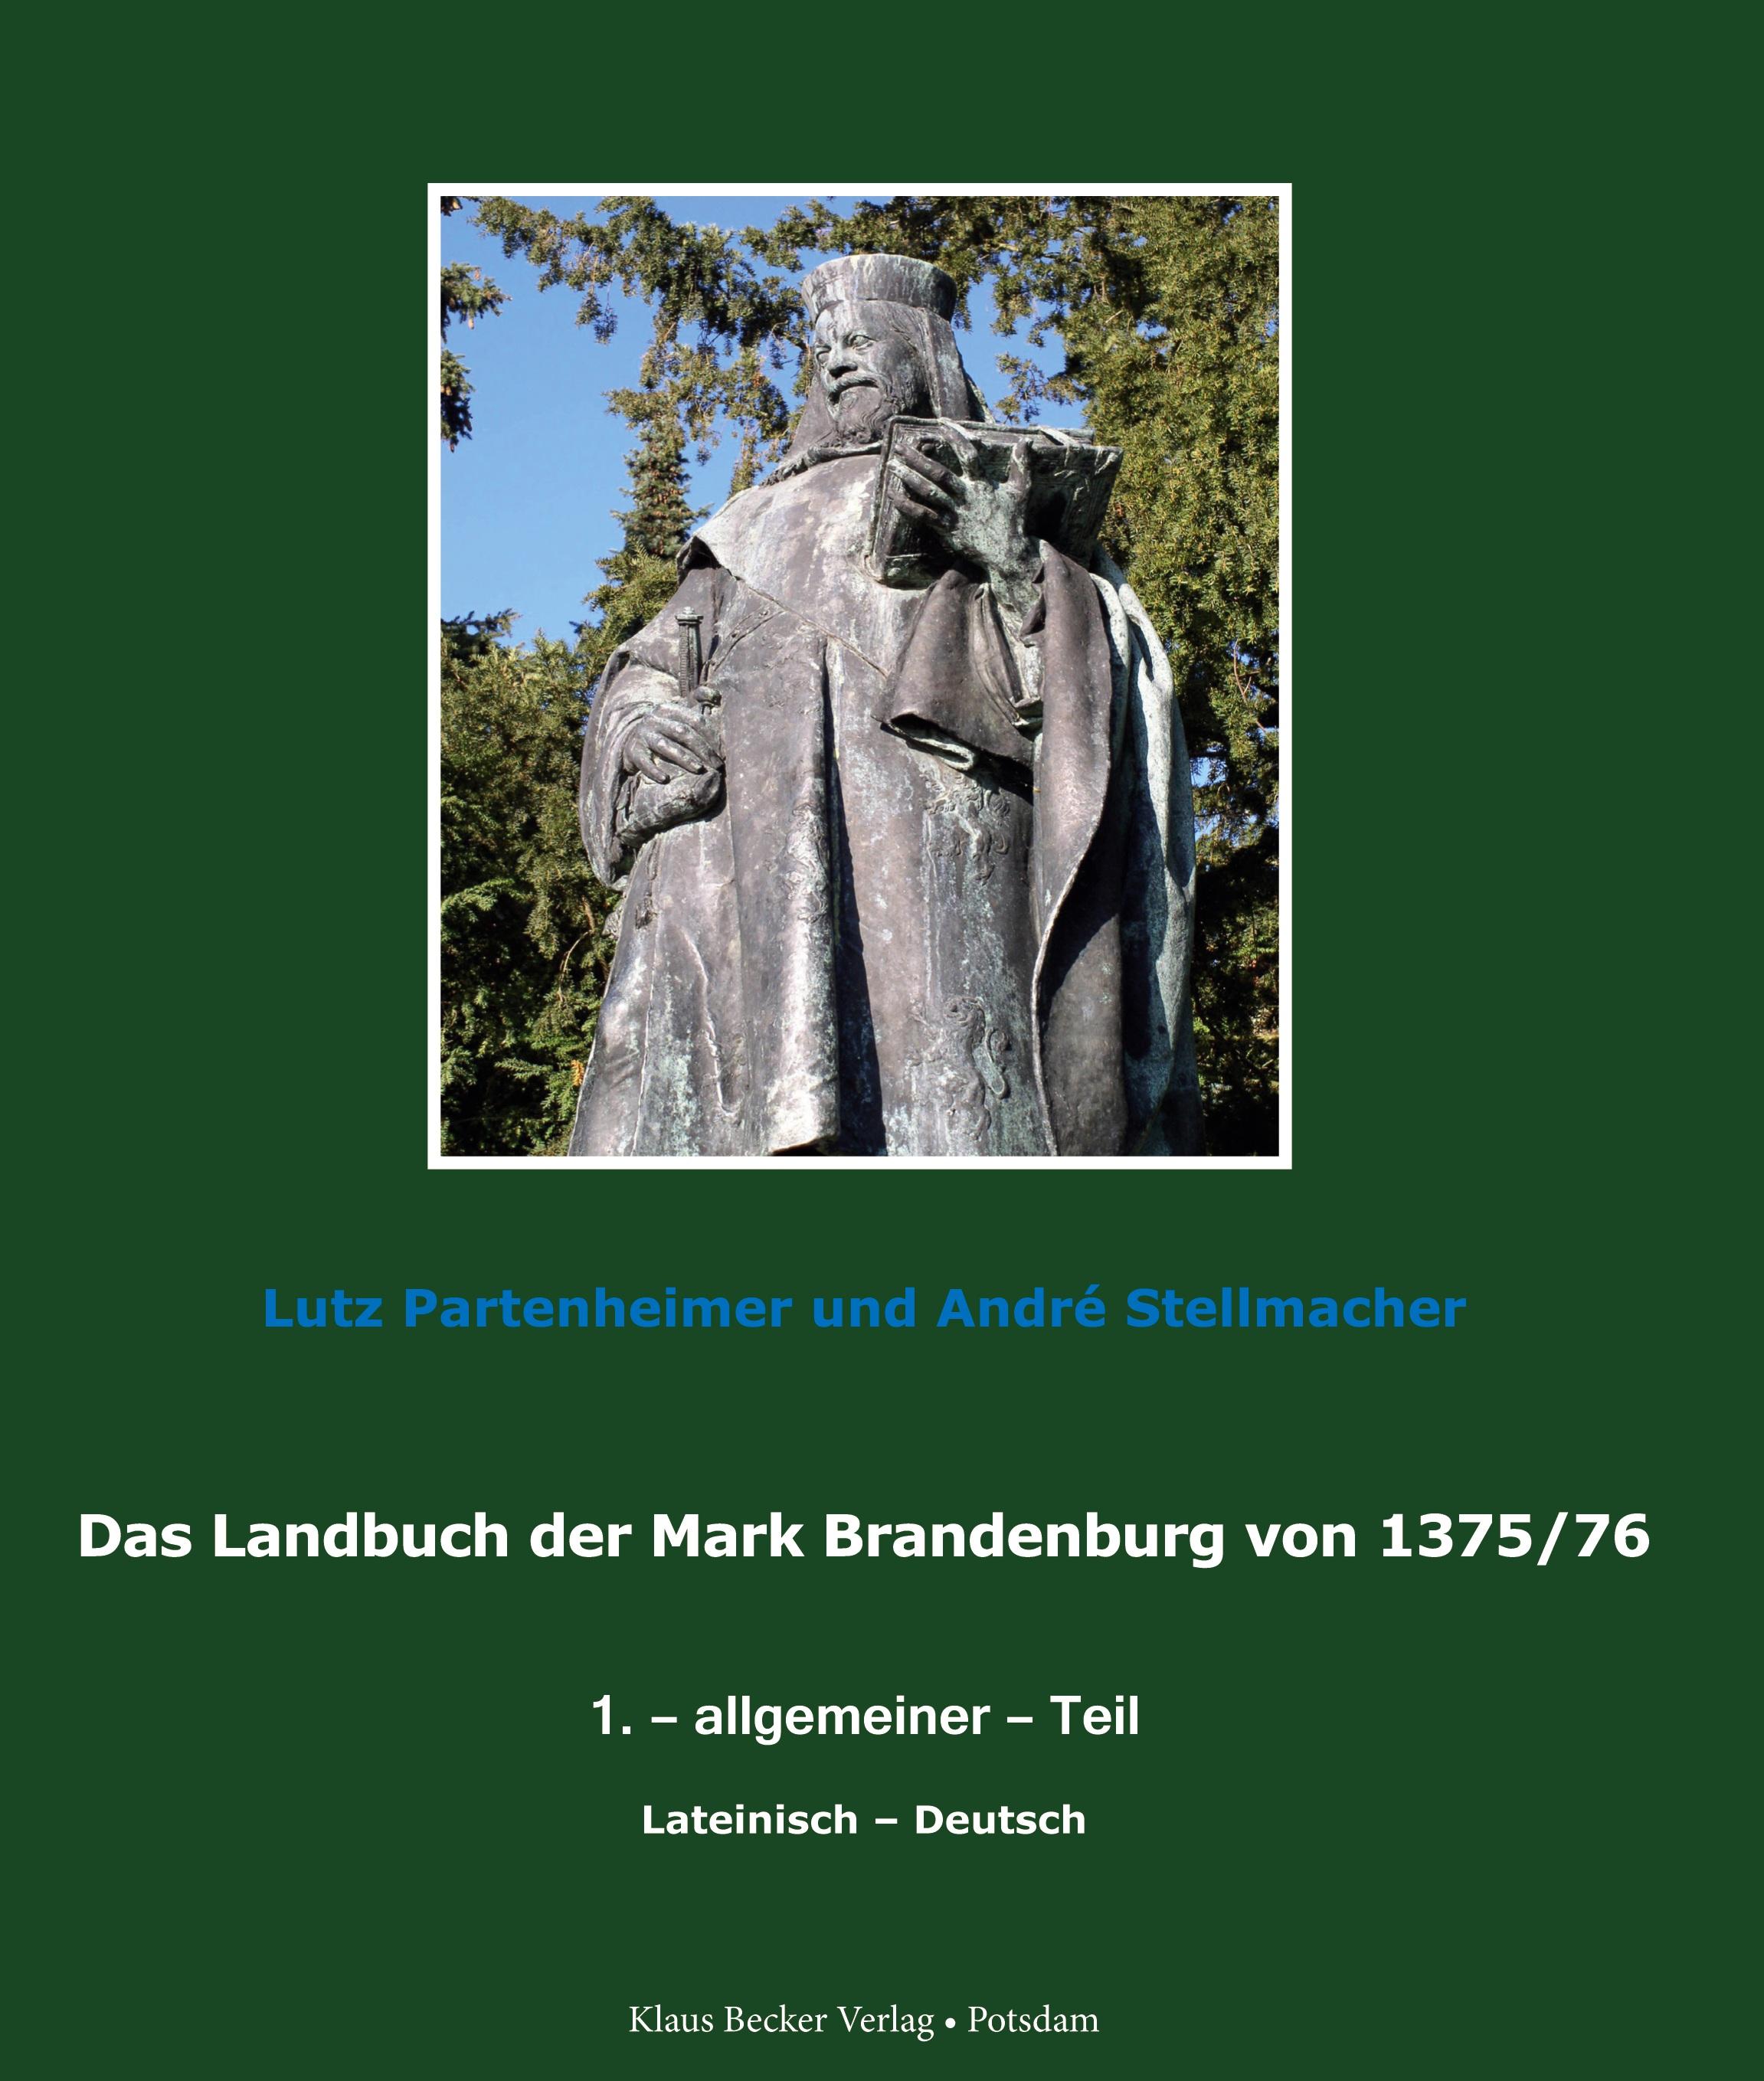 Das Landbuch der Mark Brandenburg von 1375/76 - Partenheimer, Lutz|Stellmacher, André